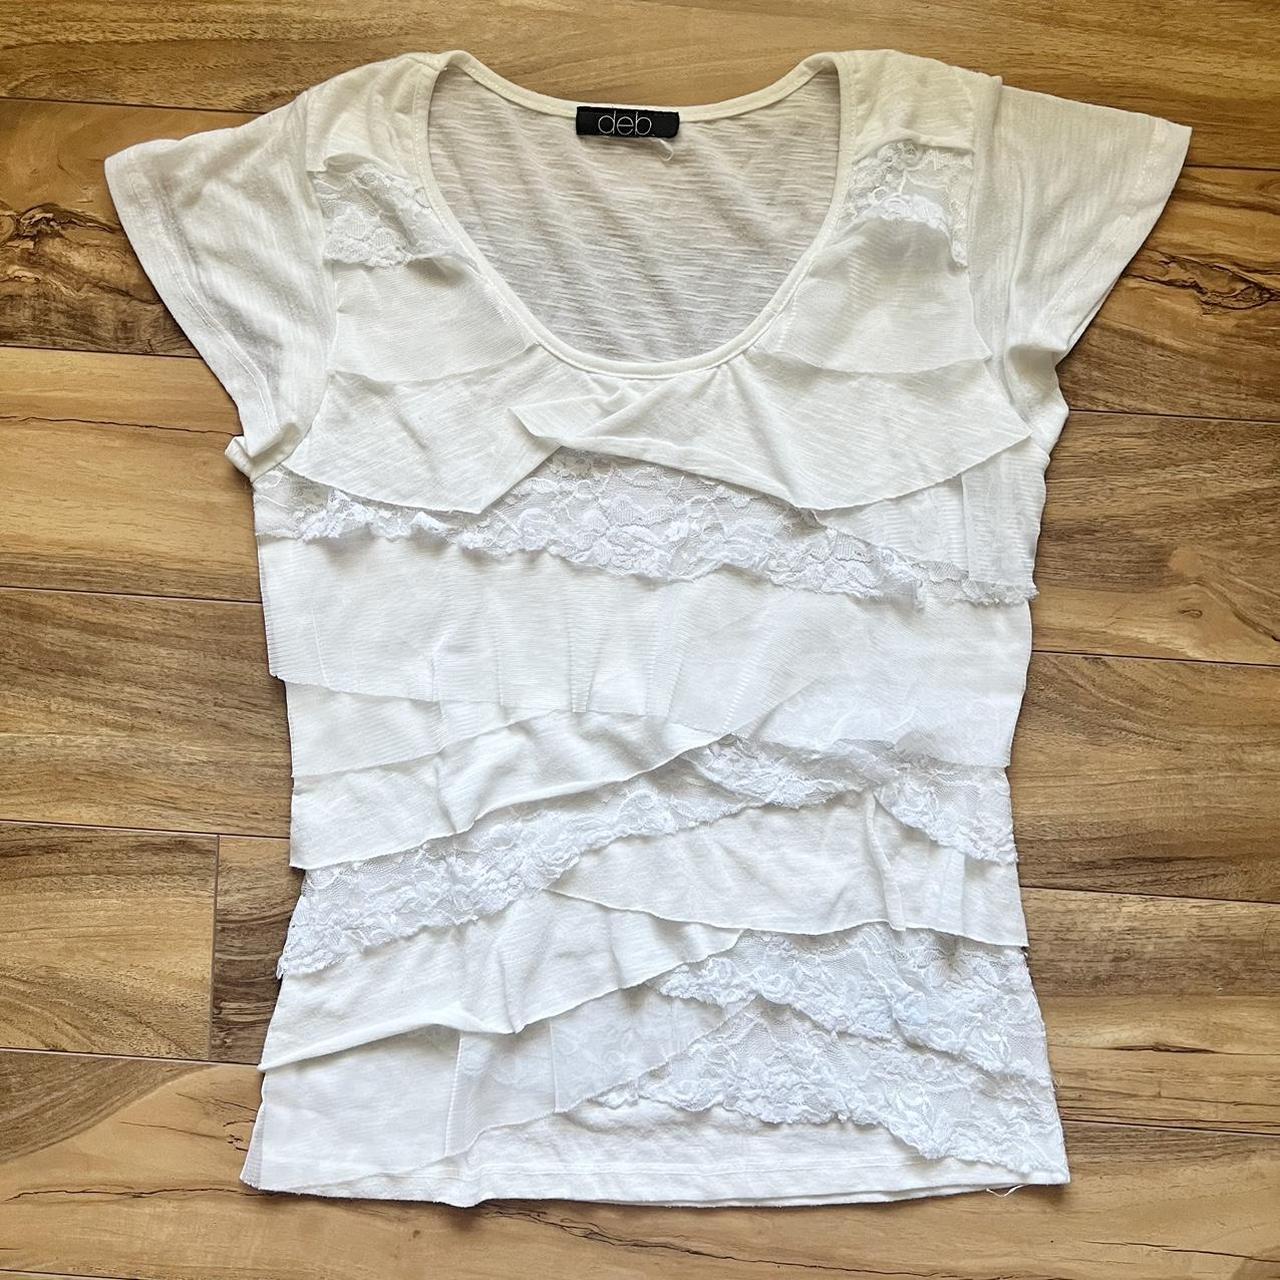 Deb Women's White and Cream T-shirt